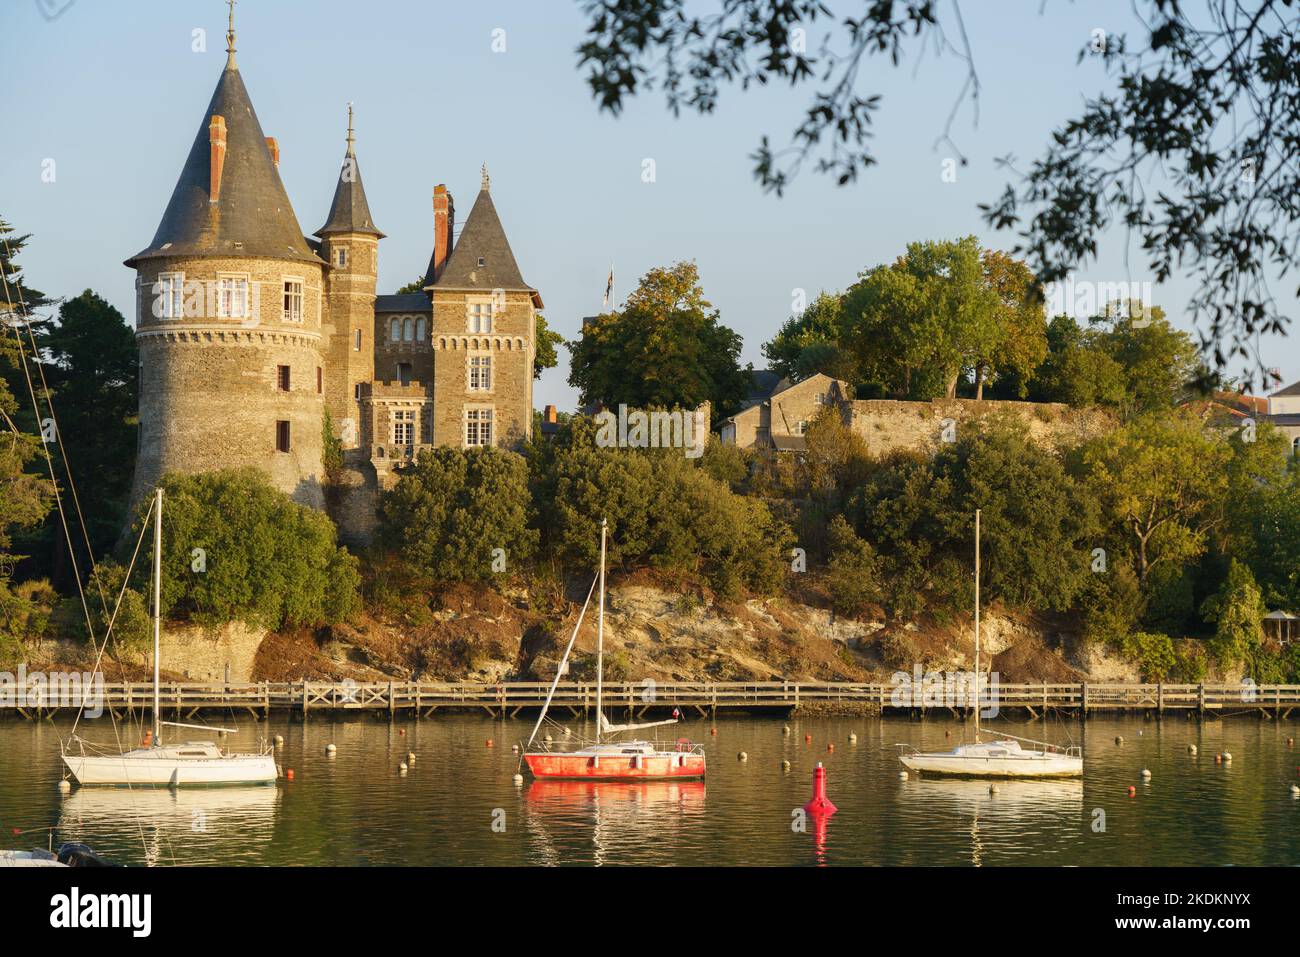 France, Pays de la Loire region, Loire-Atlantique, Pornic, port Stock Photo